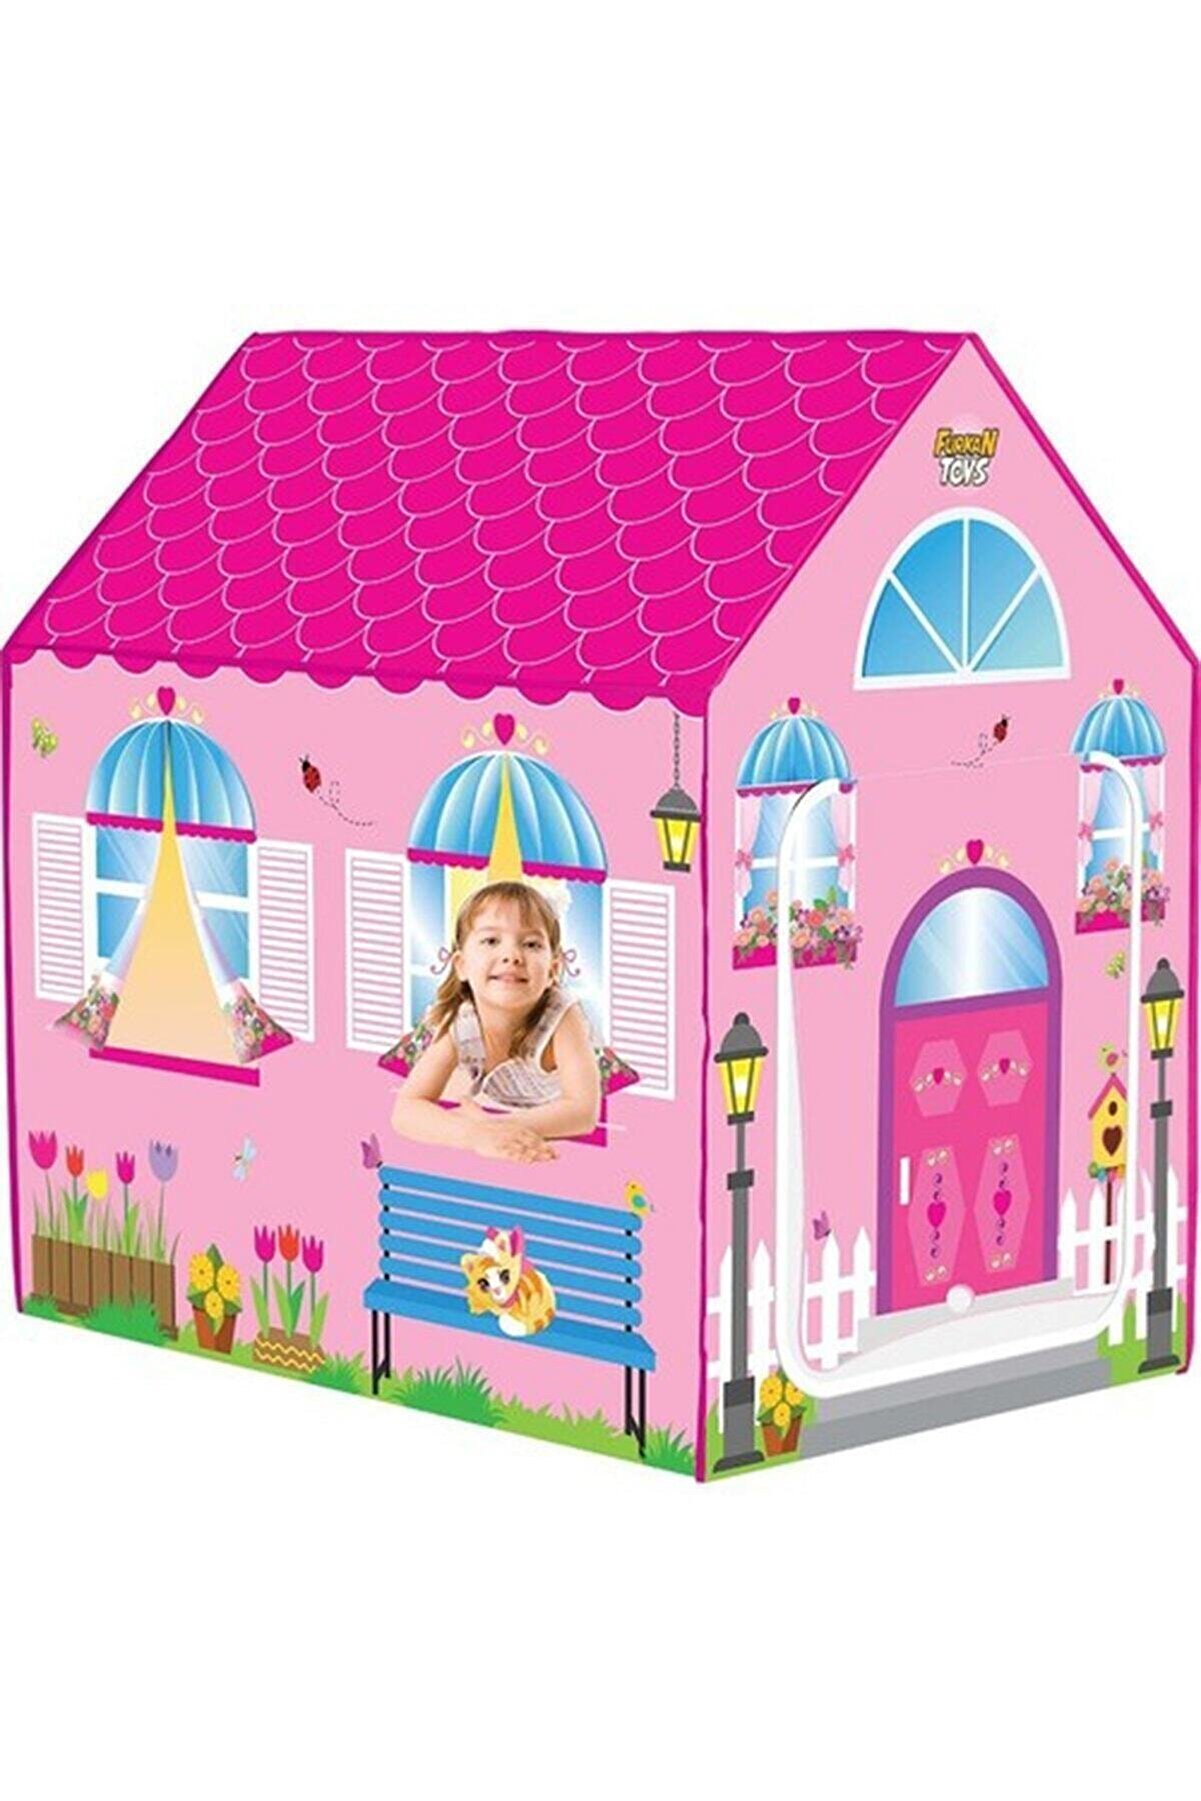 Furkan Toys 57935 Rüya Evim Oyun Evi (Çadır) / Barbie Çadır